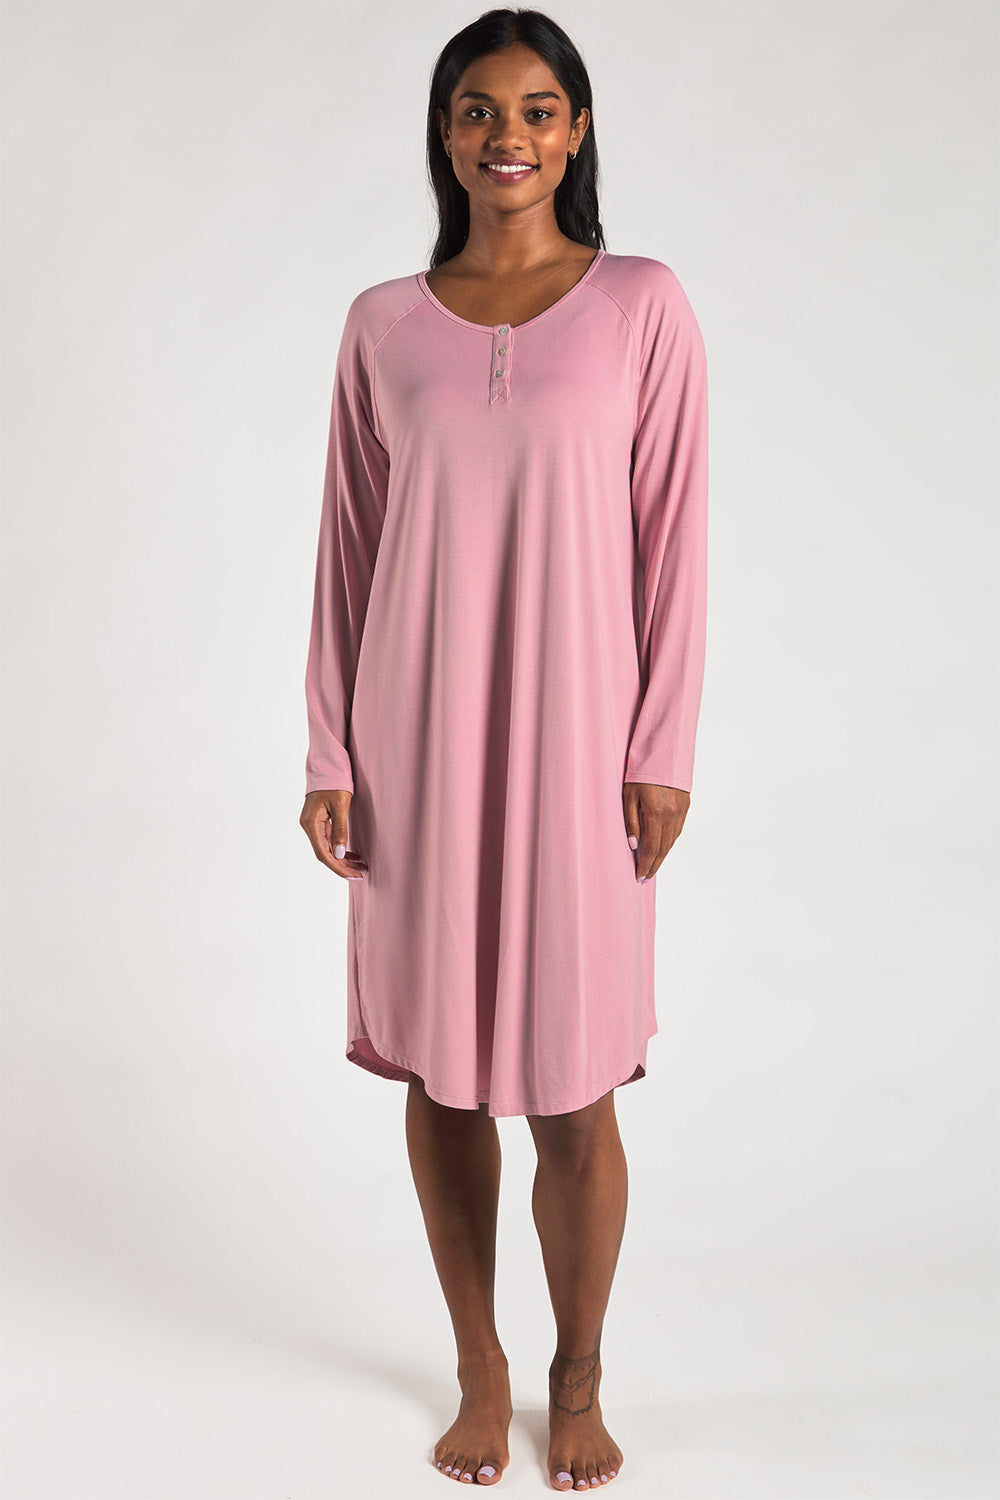 Hush Bamboo Sleep Dress - Pink – Terrera